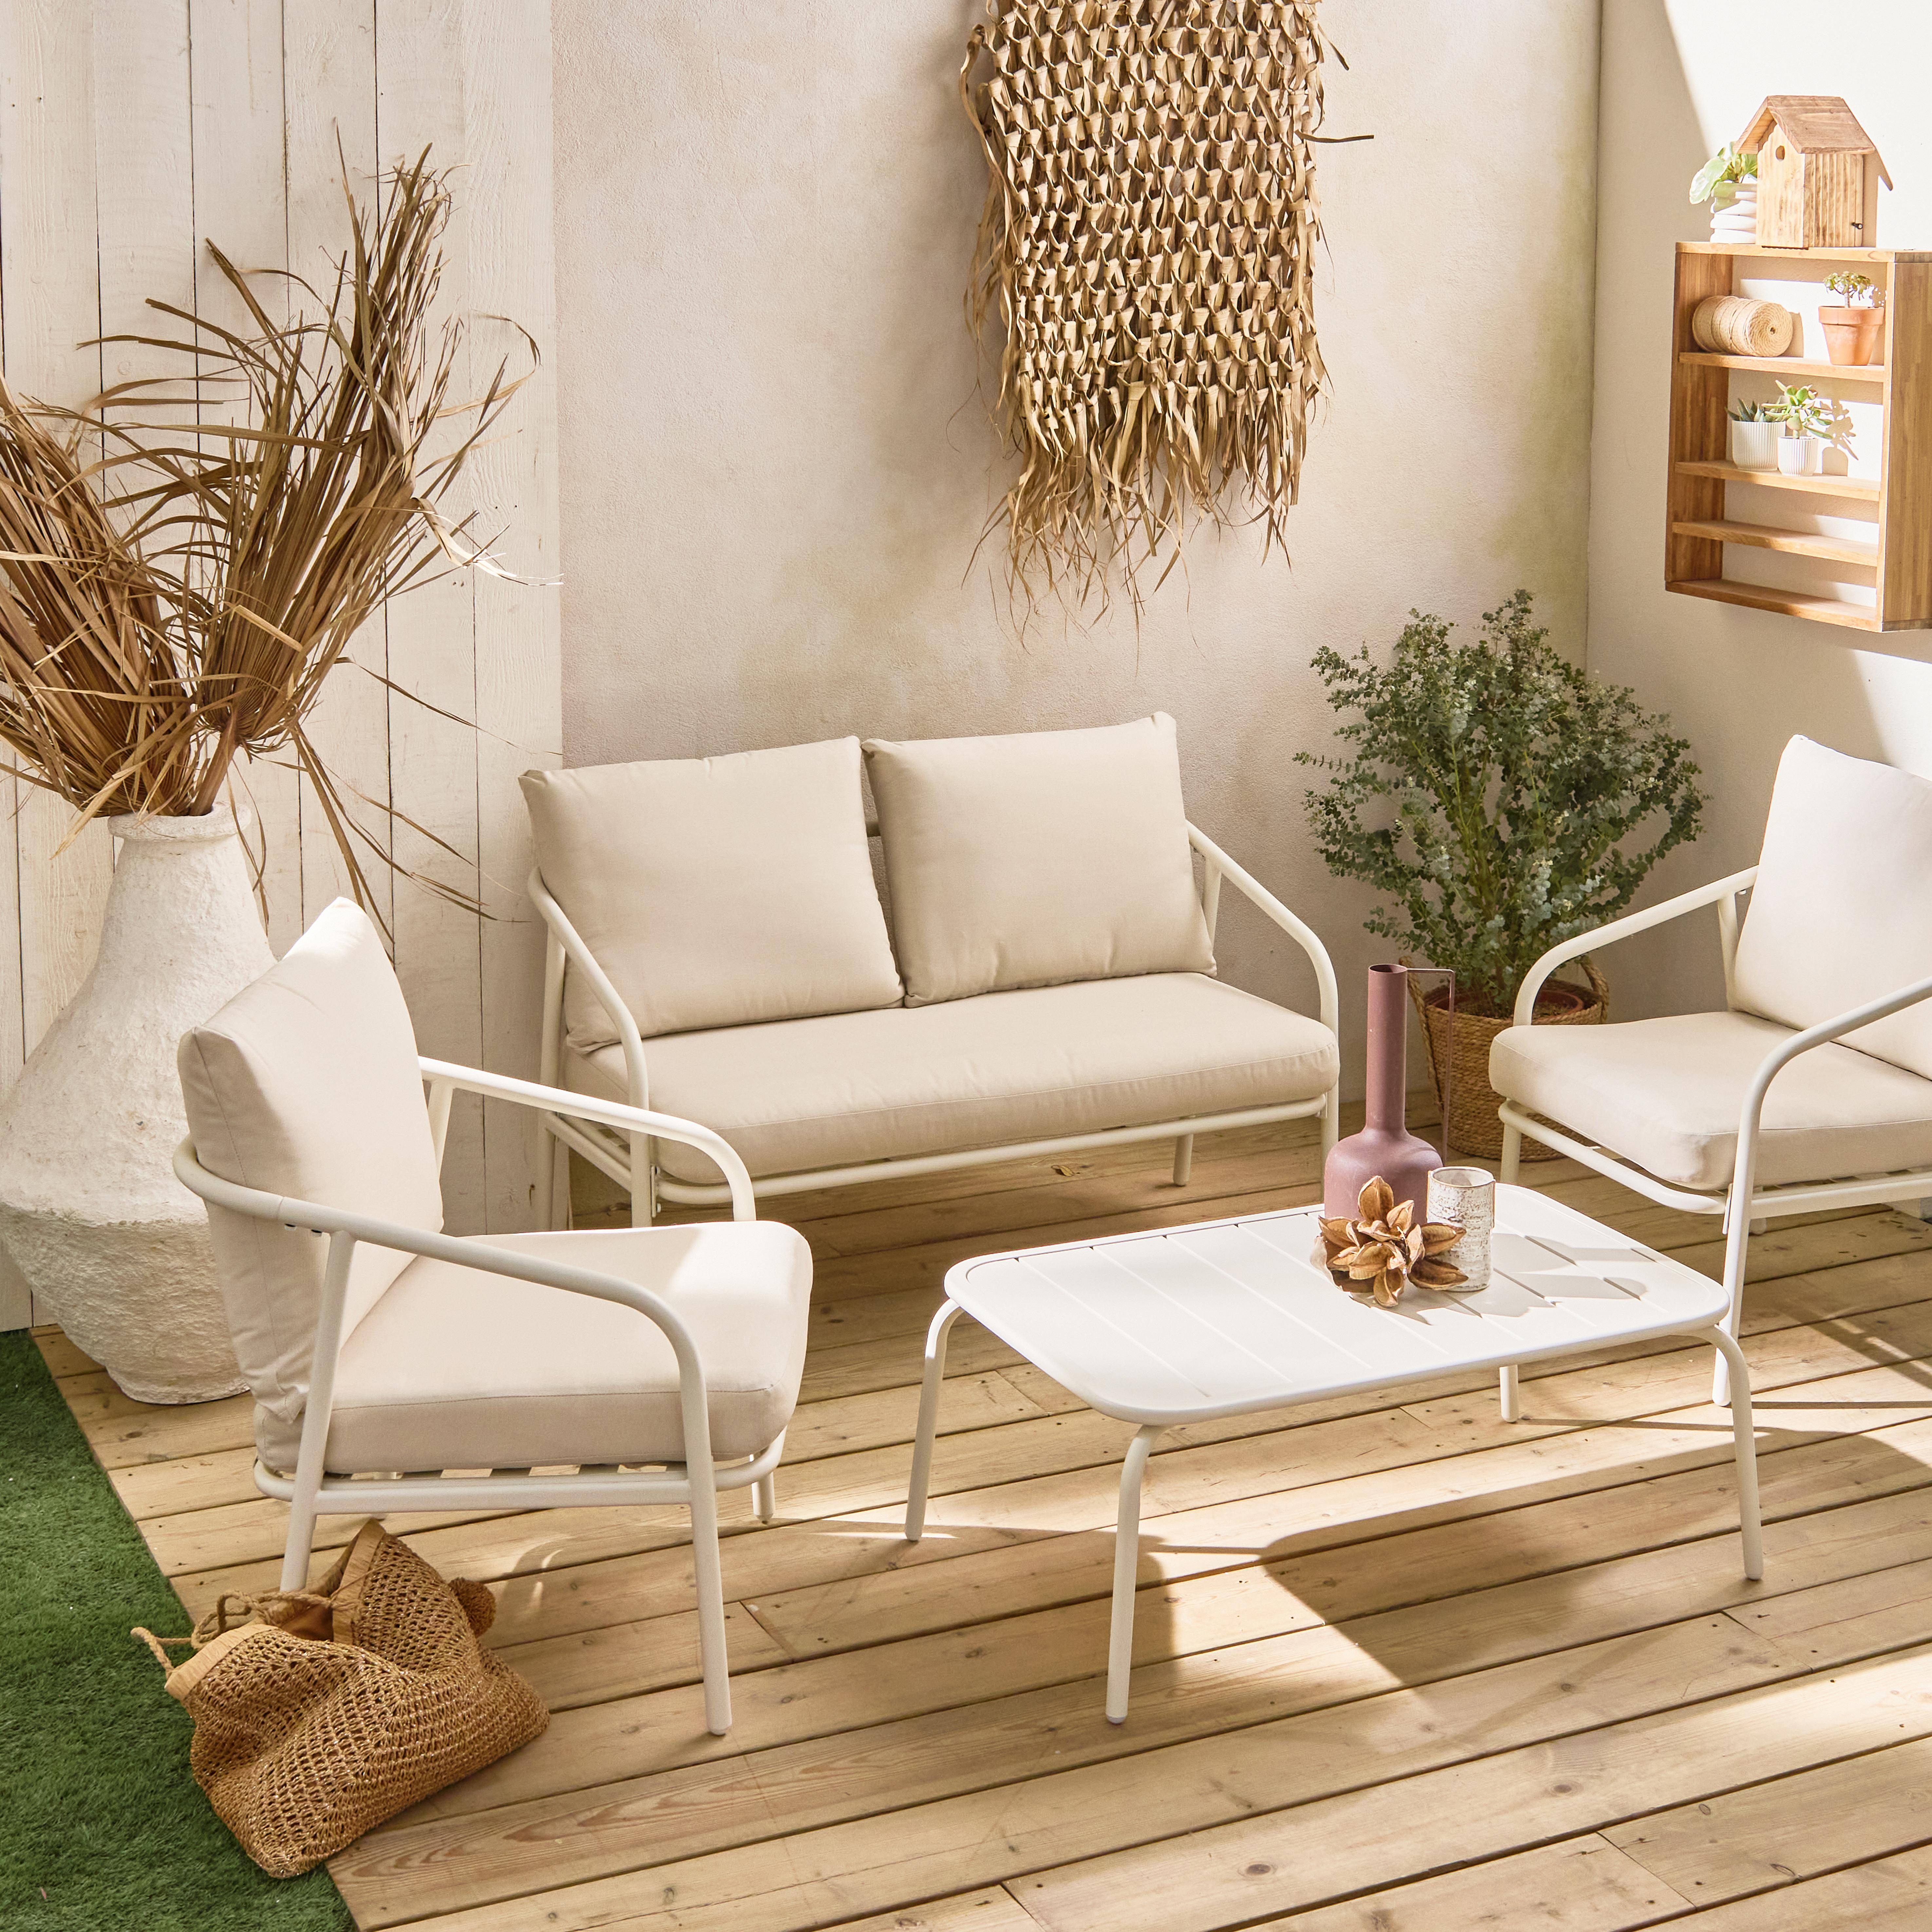 Salon de jardin en métal 4 places blanc, coussins beige, design épuré arrondi  ,sweeek,Photo1